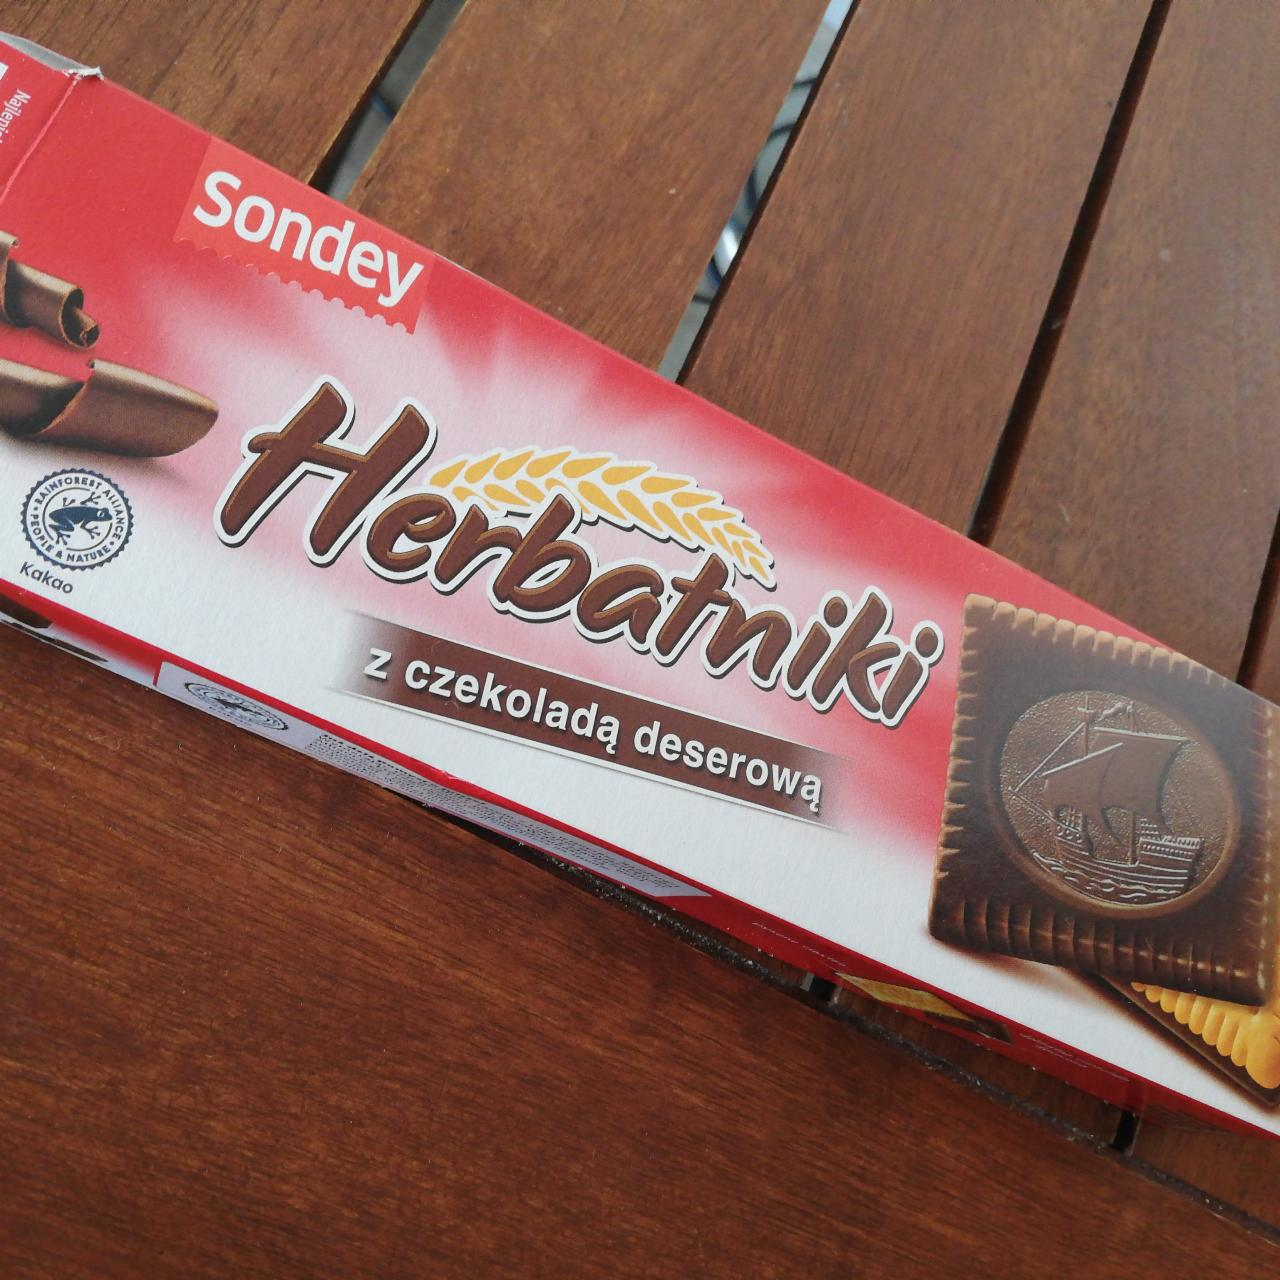 Фото - Печенье в черном шоколаде Herbatniki Sondey